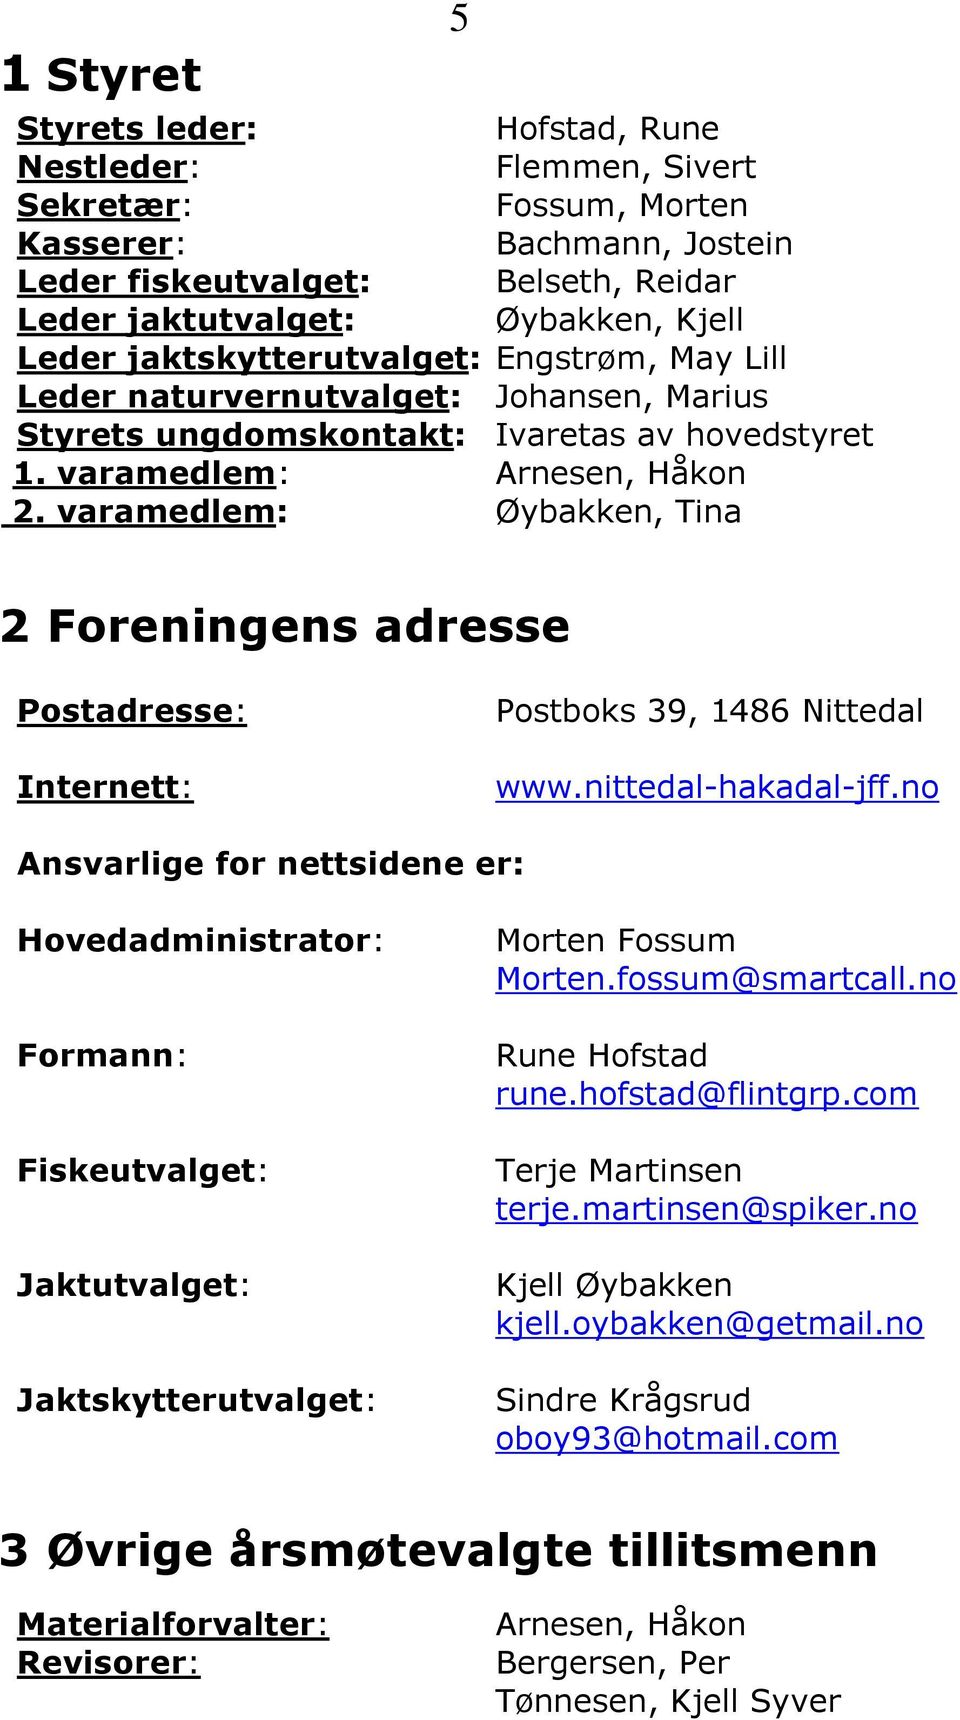 varamedlem: Øybakken, Tina 5 2 Foreningens adresse Postadresse: Internett: Postboks 39, 1486 Nittedal www.nittedal-hakadal-jff.